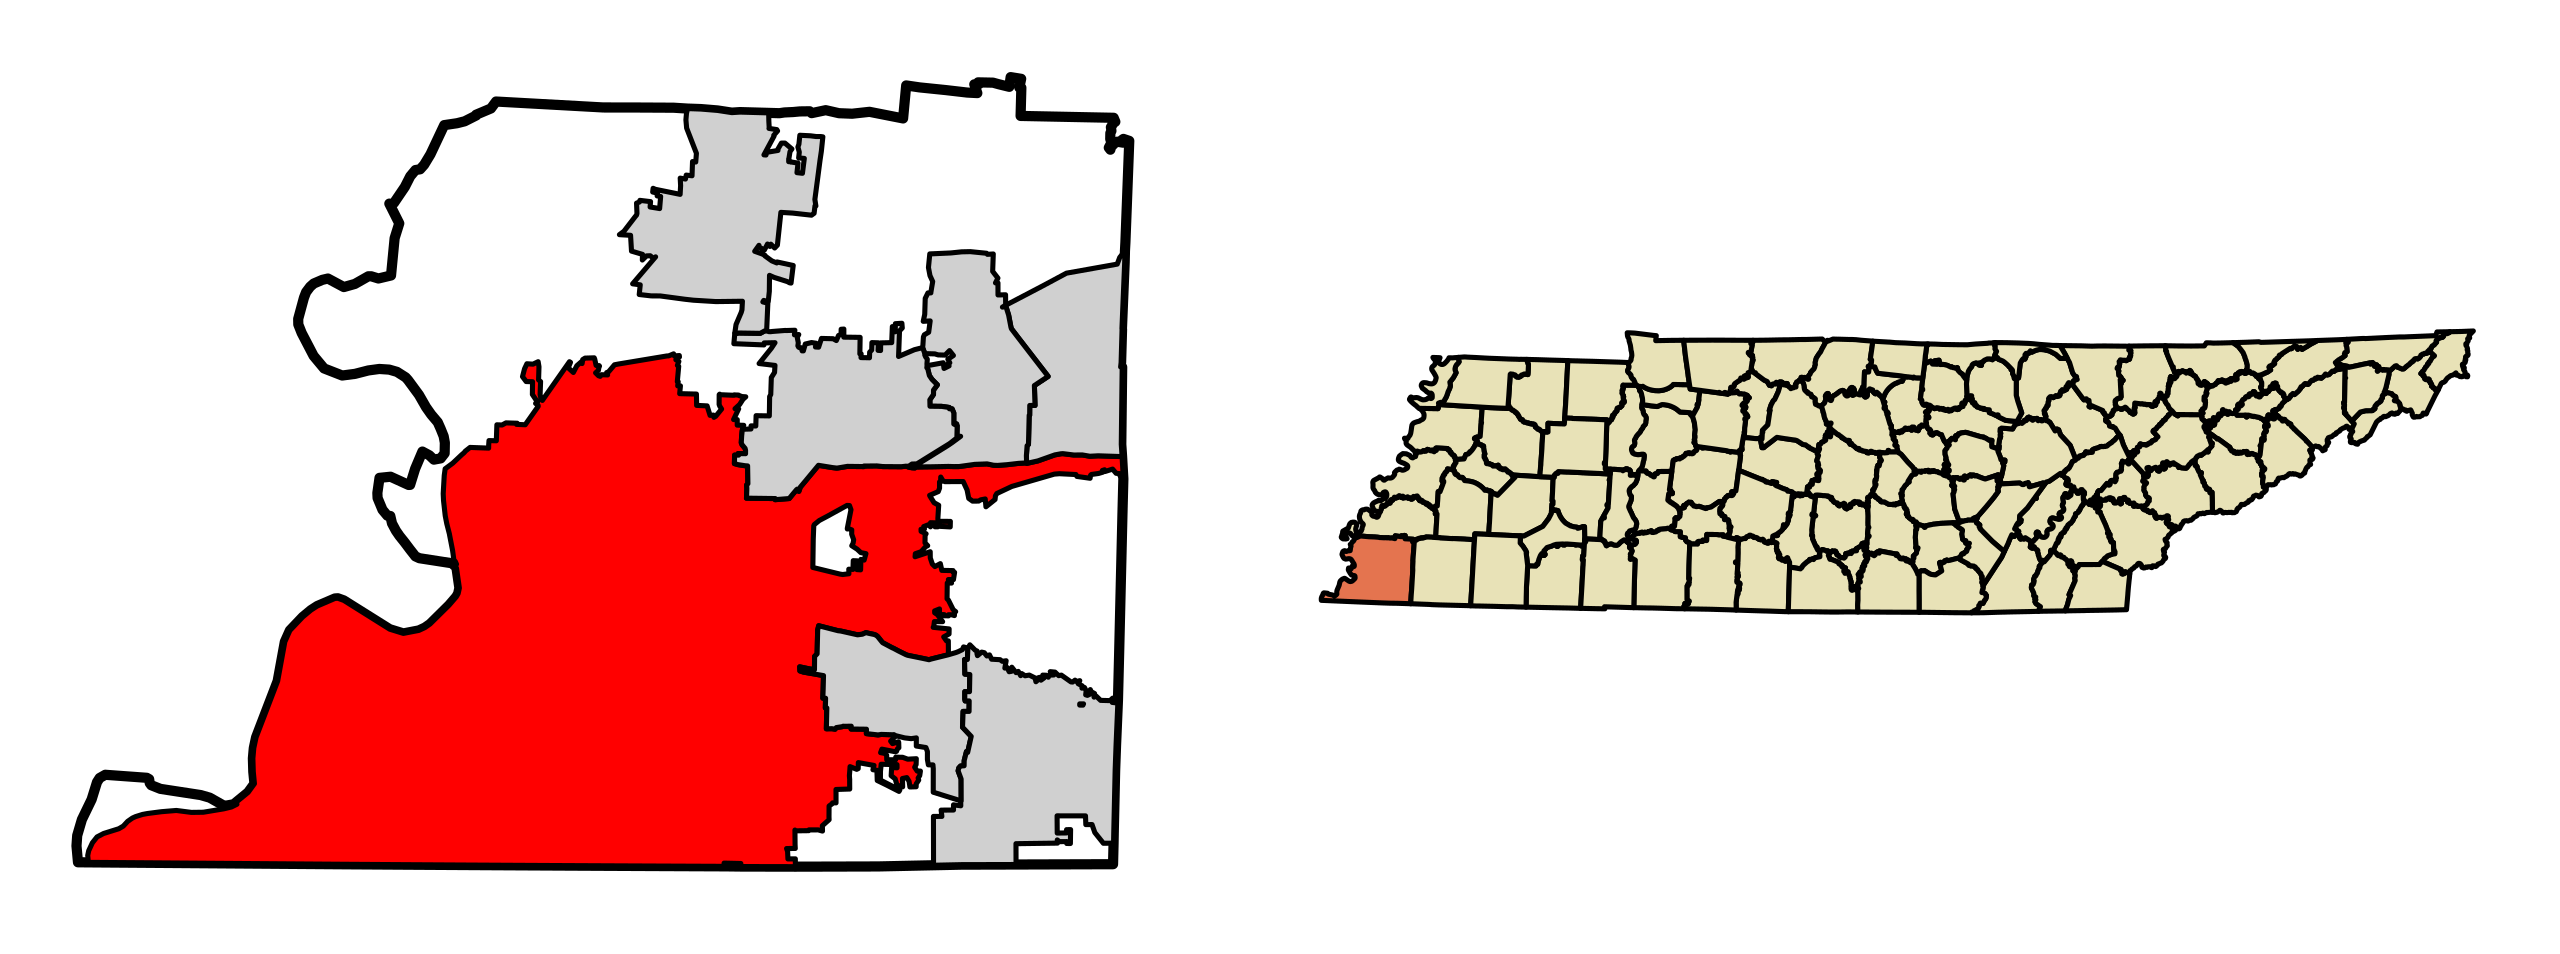 Memphis – Wikipédia, a enciclopédia livre